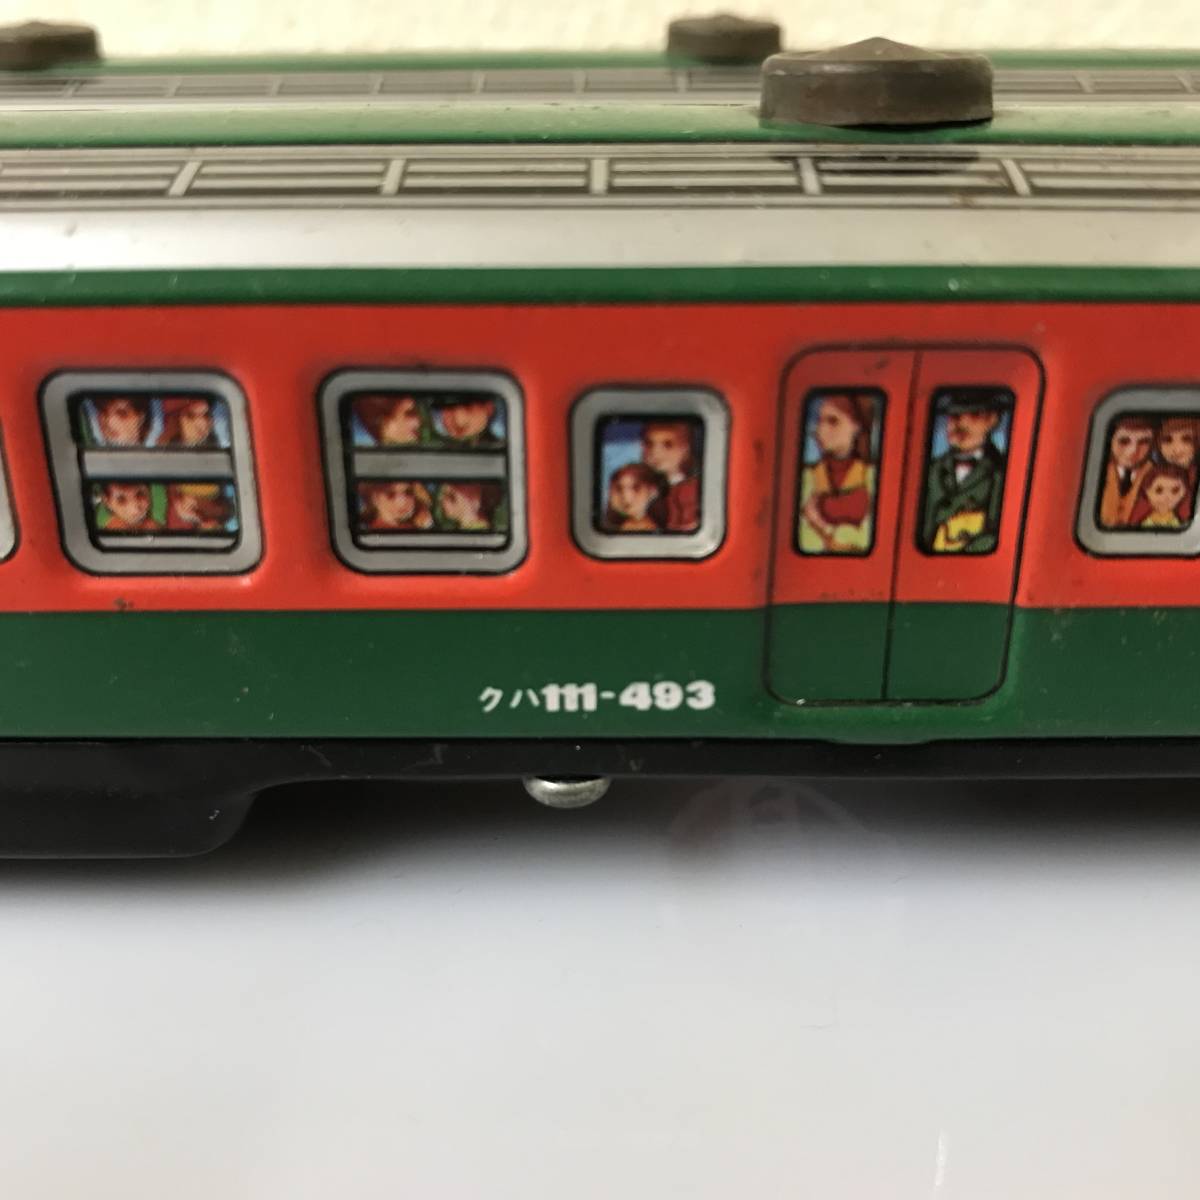 ブリキ JR 電車 クハ 111-493 イチコー 鉄道 列車 長期保管品 2セット _画像3